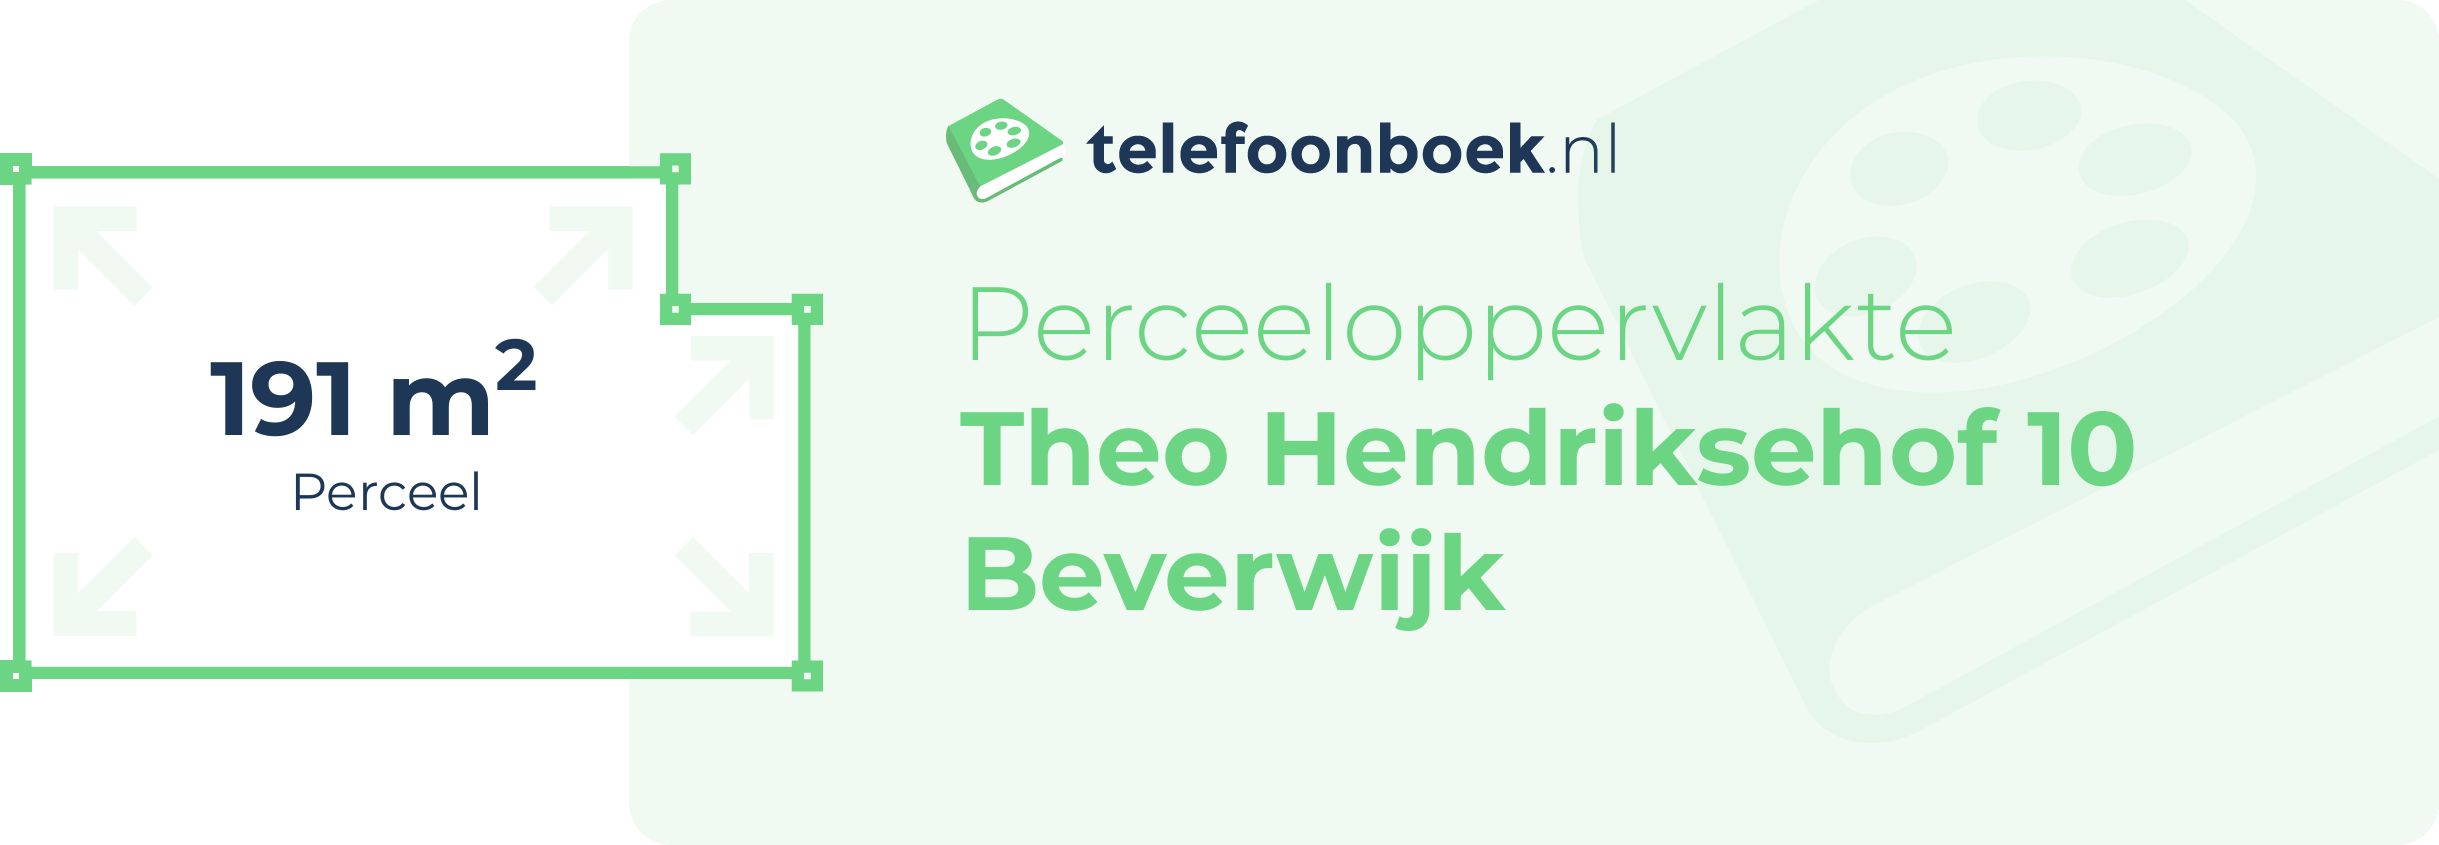 Perceeloppervlakte Theo Hendriksehof 10 Beverwijk